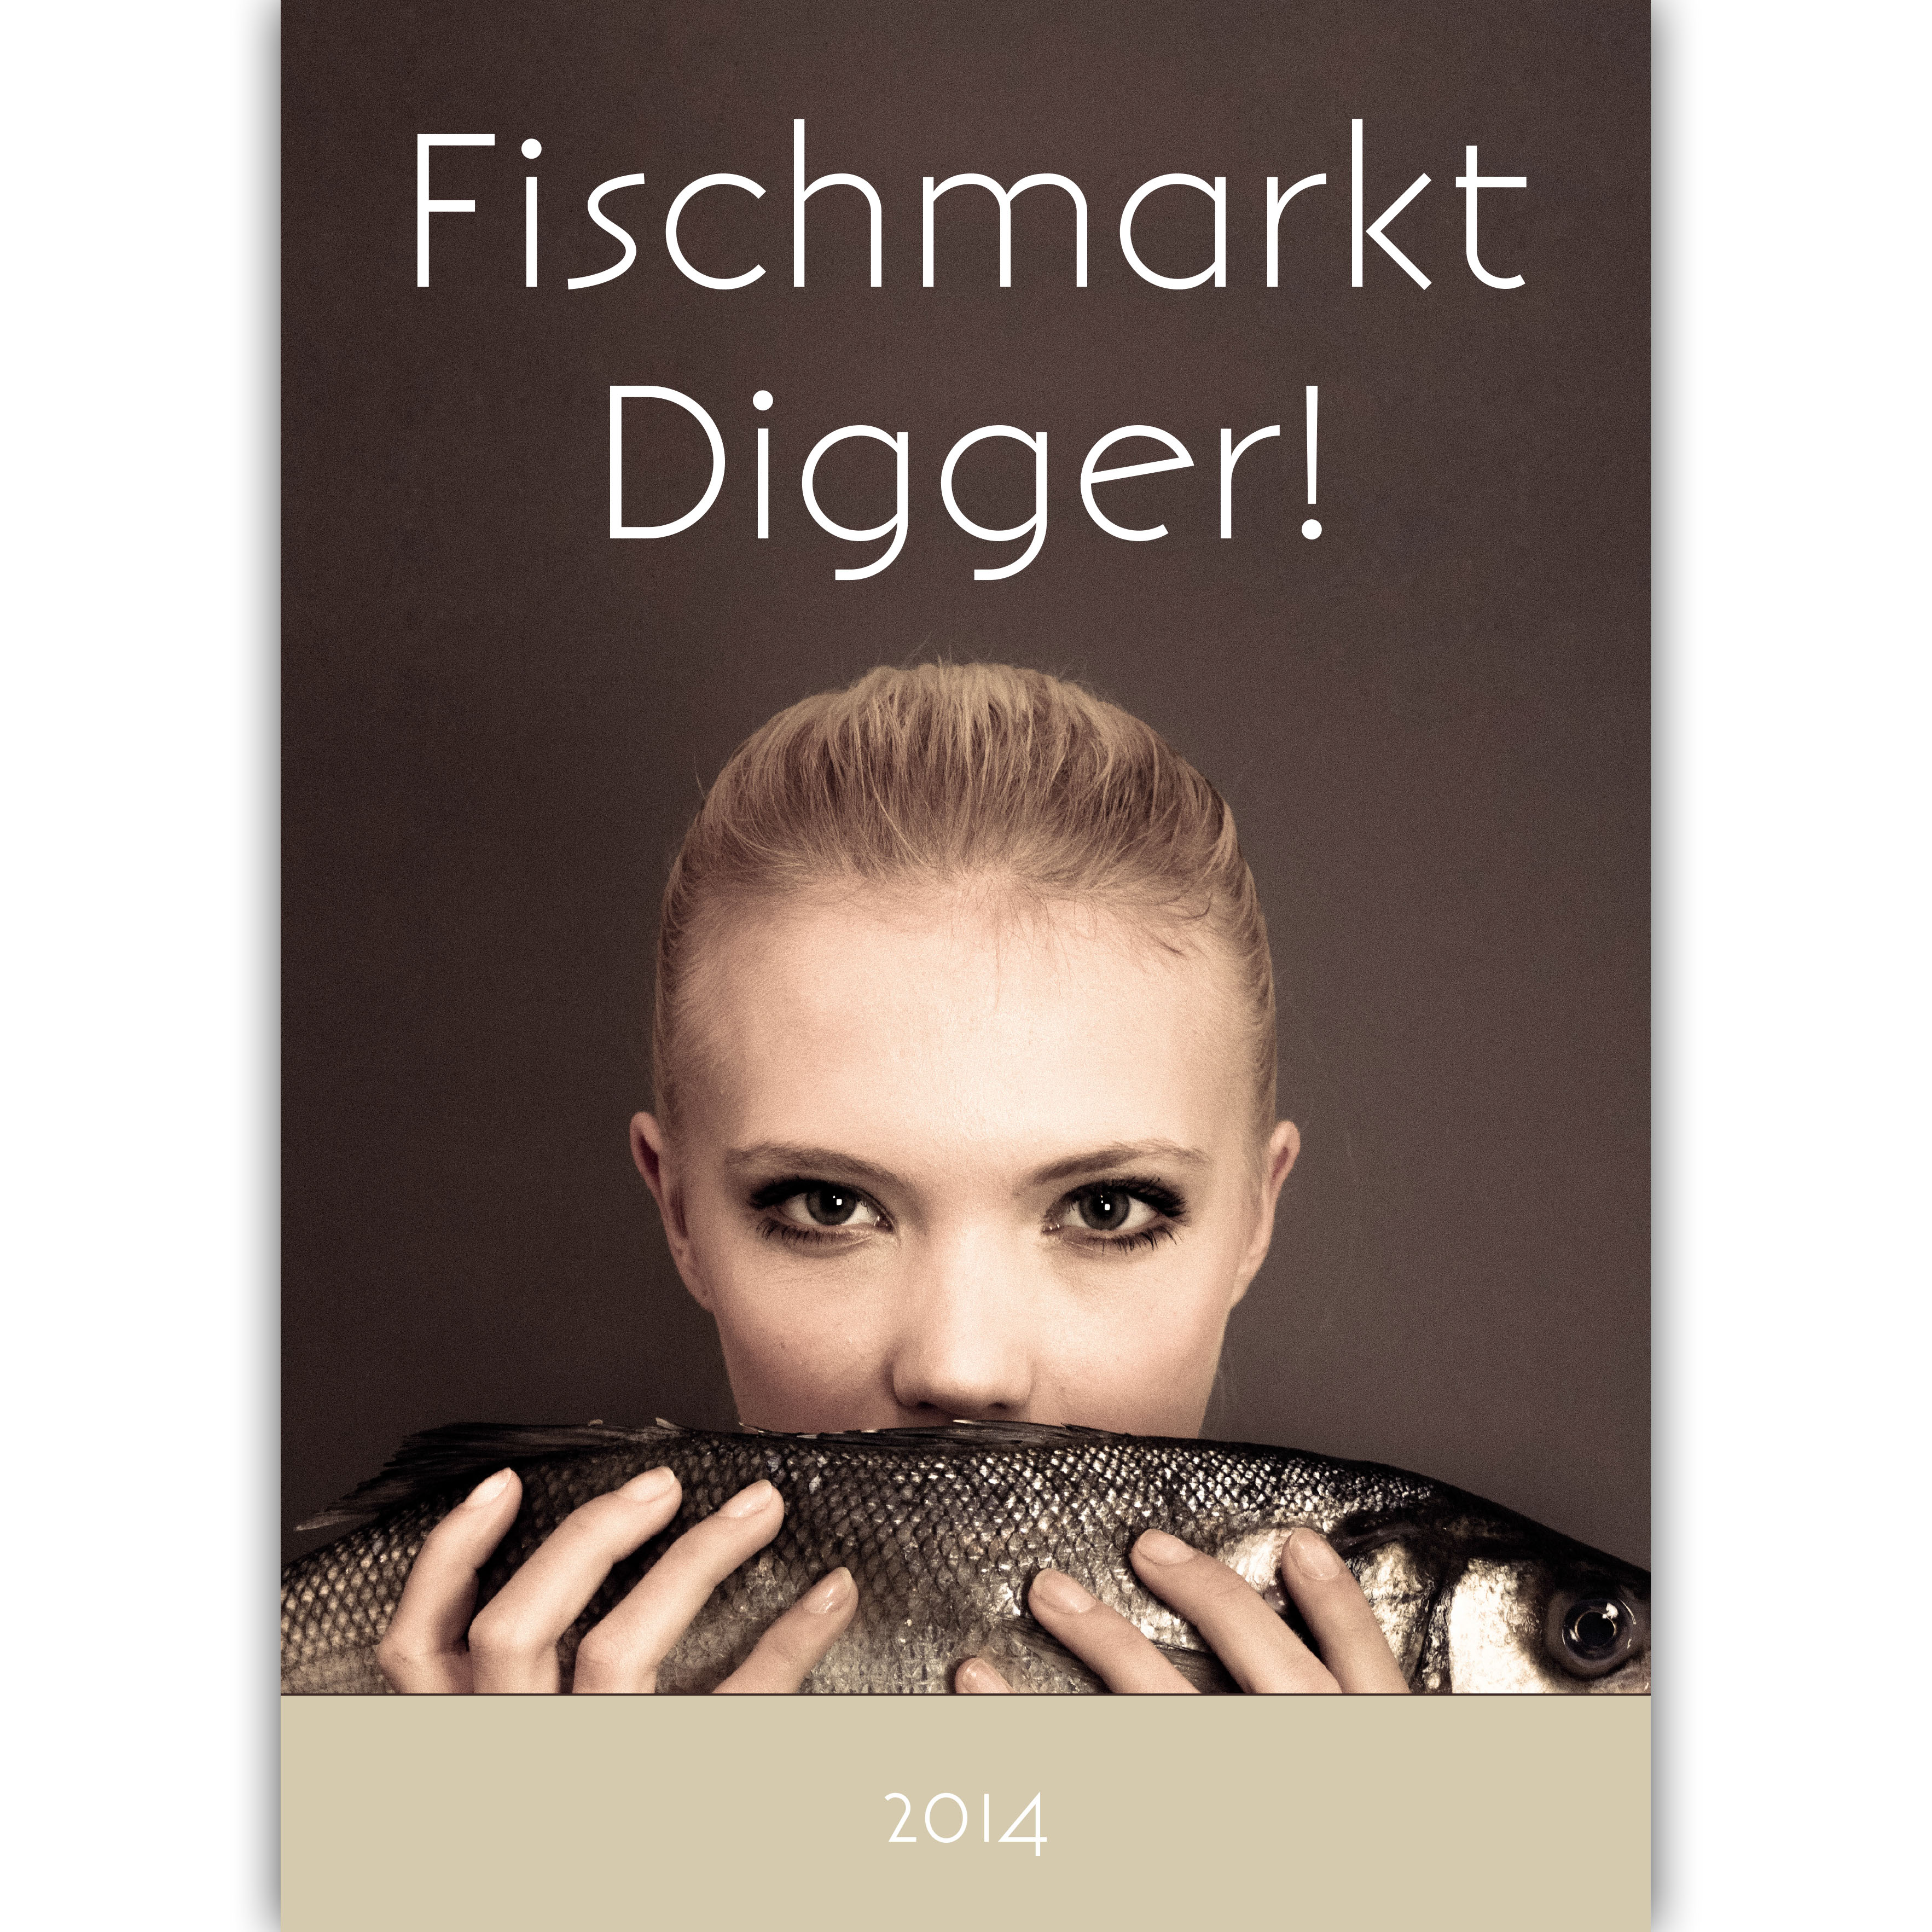 (c) Fischmarkt-digger.de